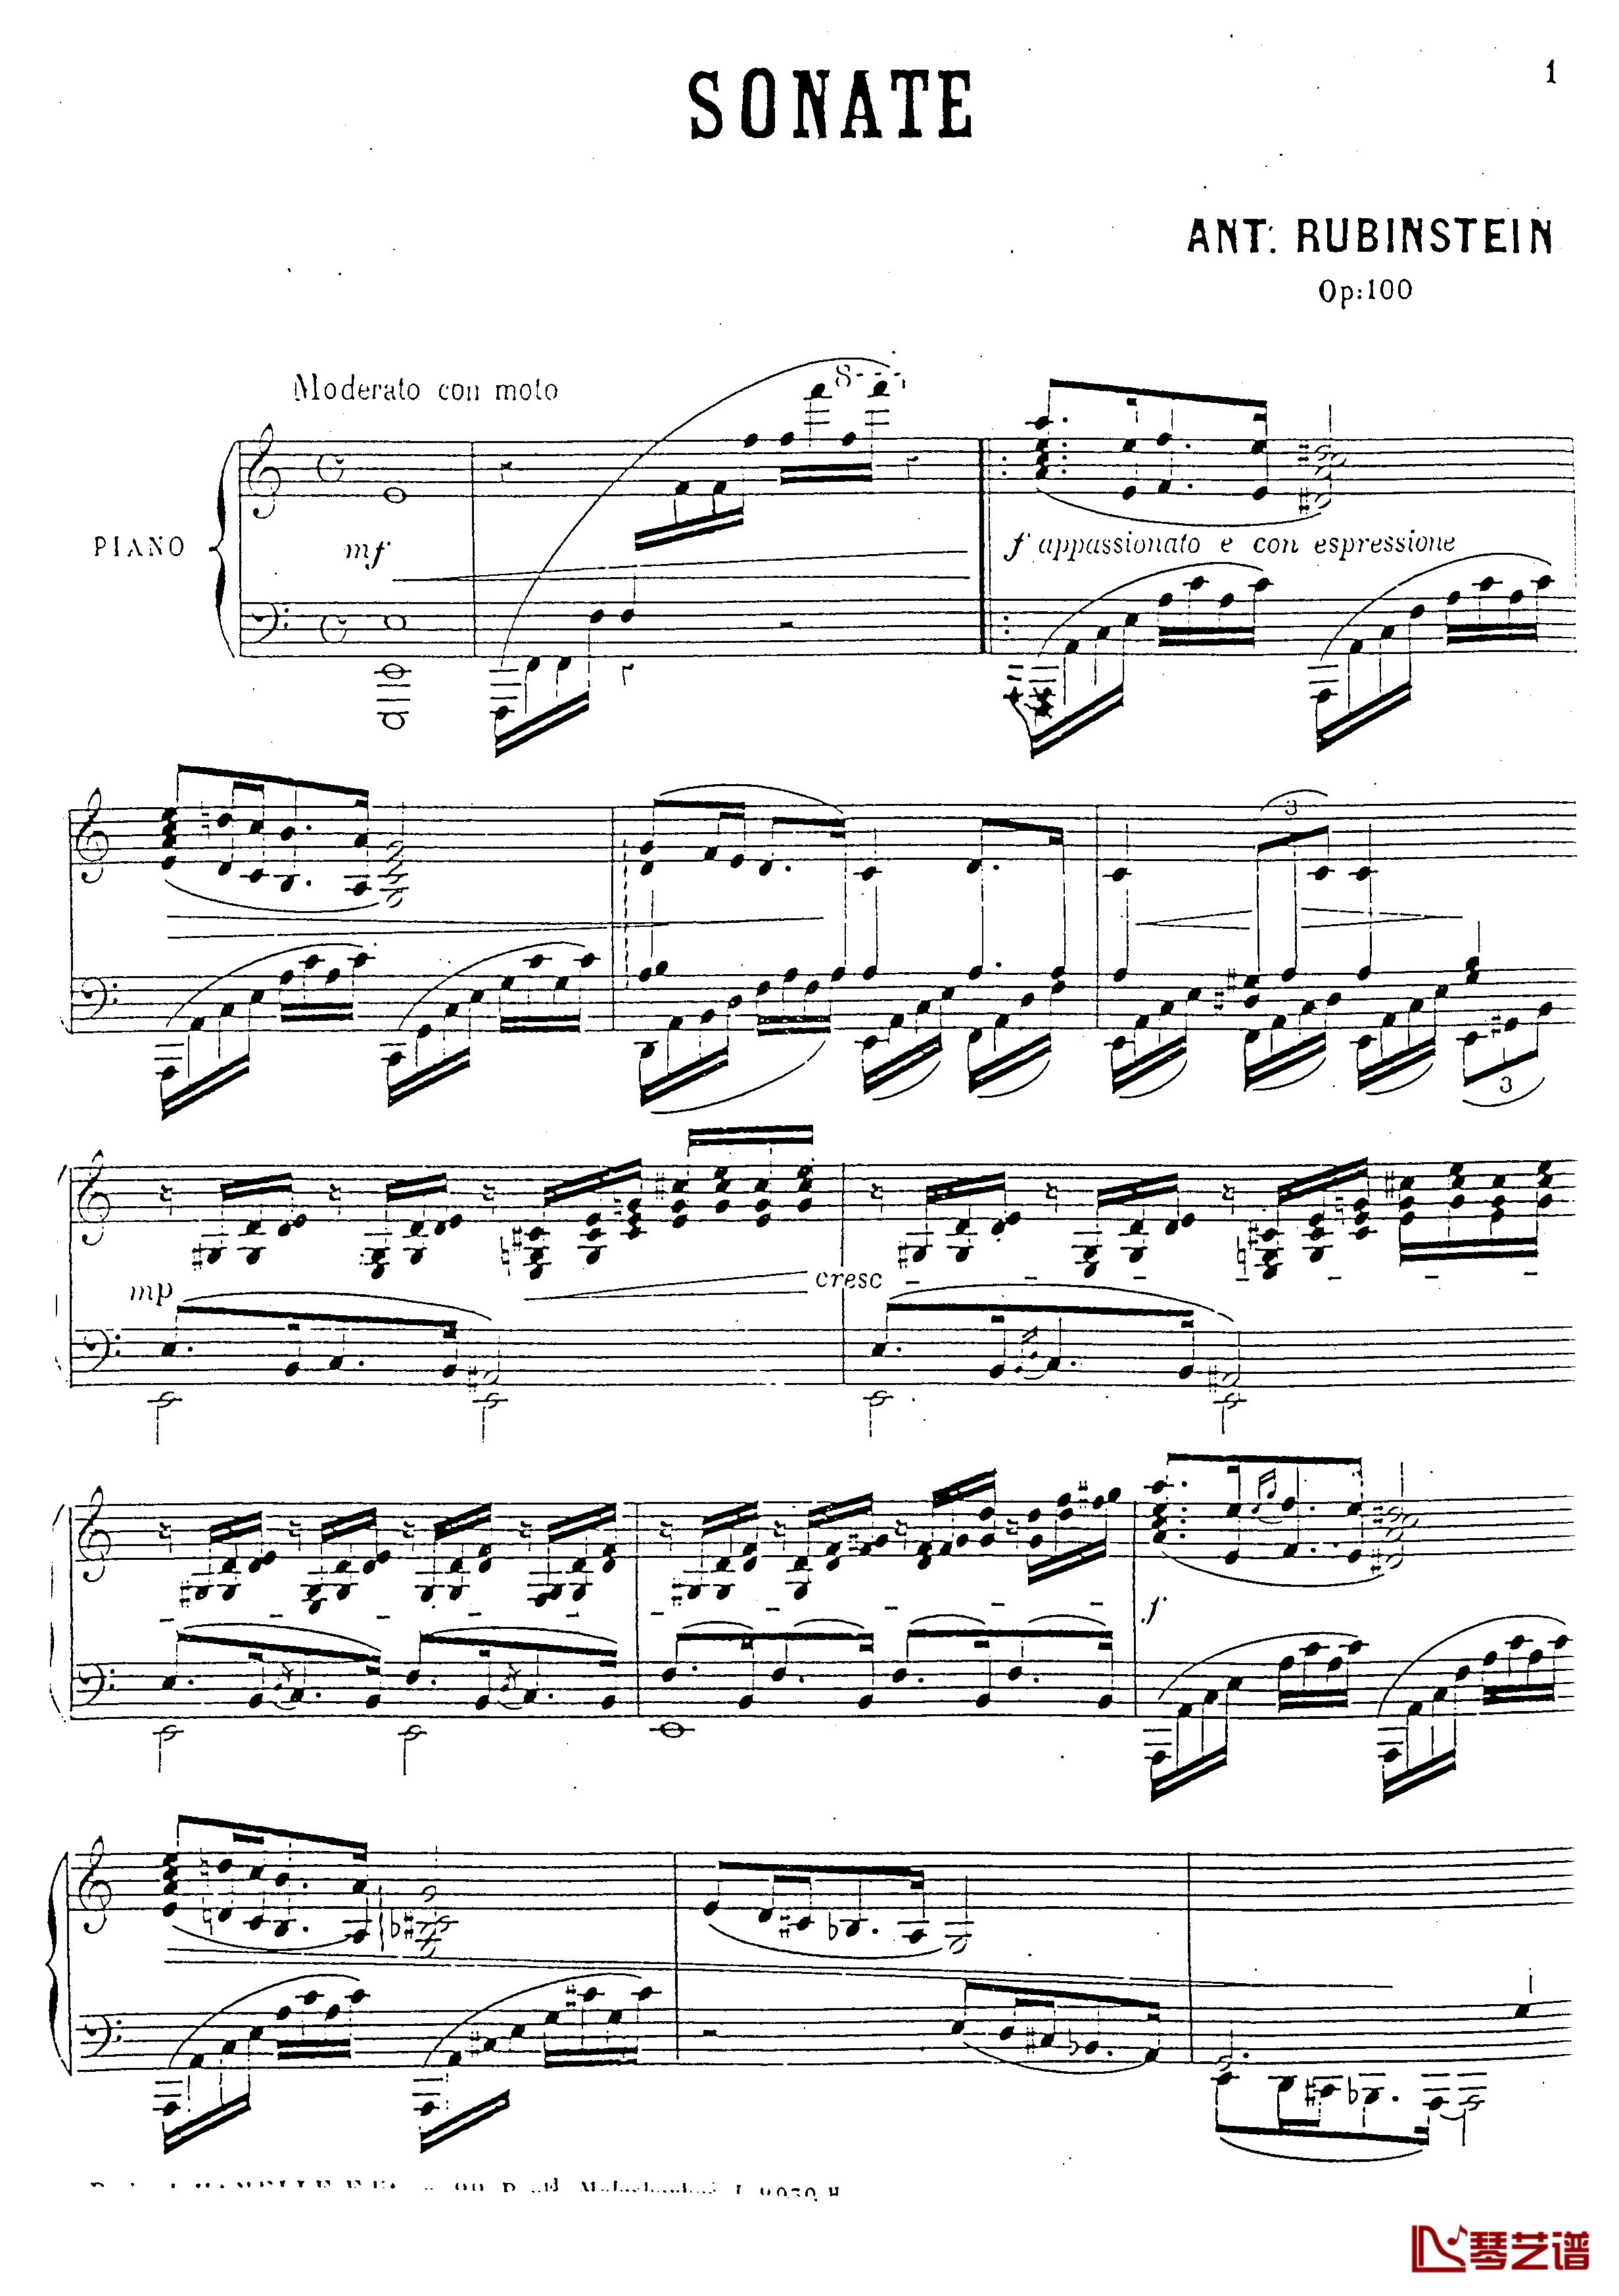 a小调第四钢琴奏鸣曲钢琴谱-安东 鲁宾斯坦- Op.1002